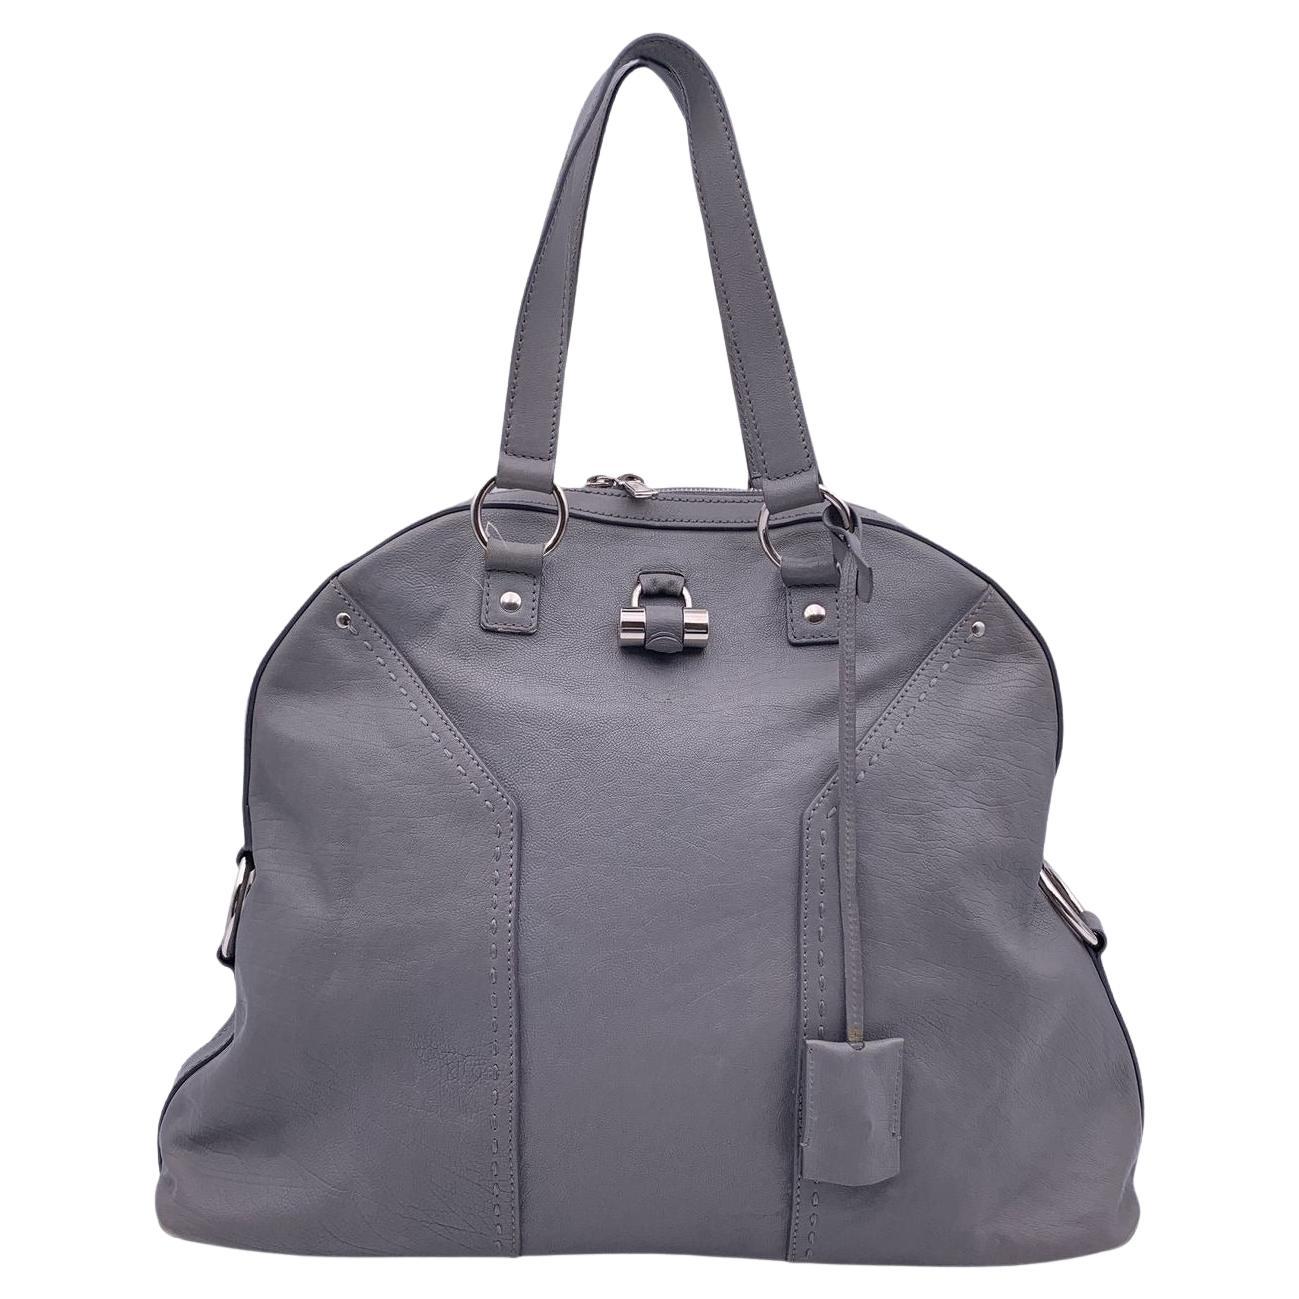 Yves Saint Laurent Grey Leather Large Muse Tote Shoulder Bag